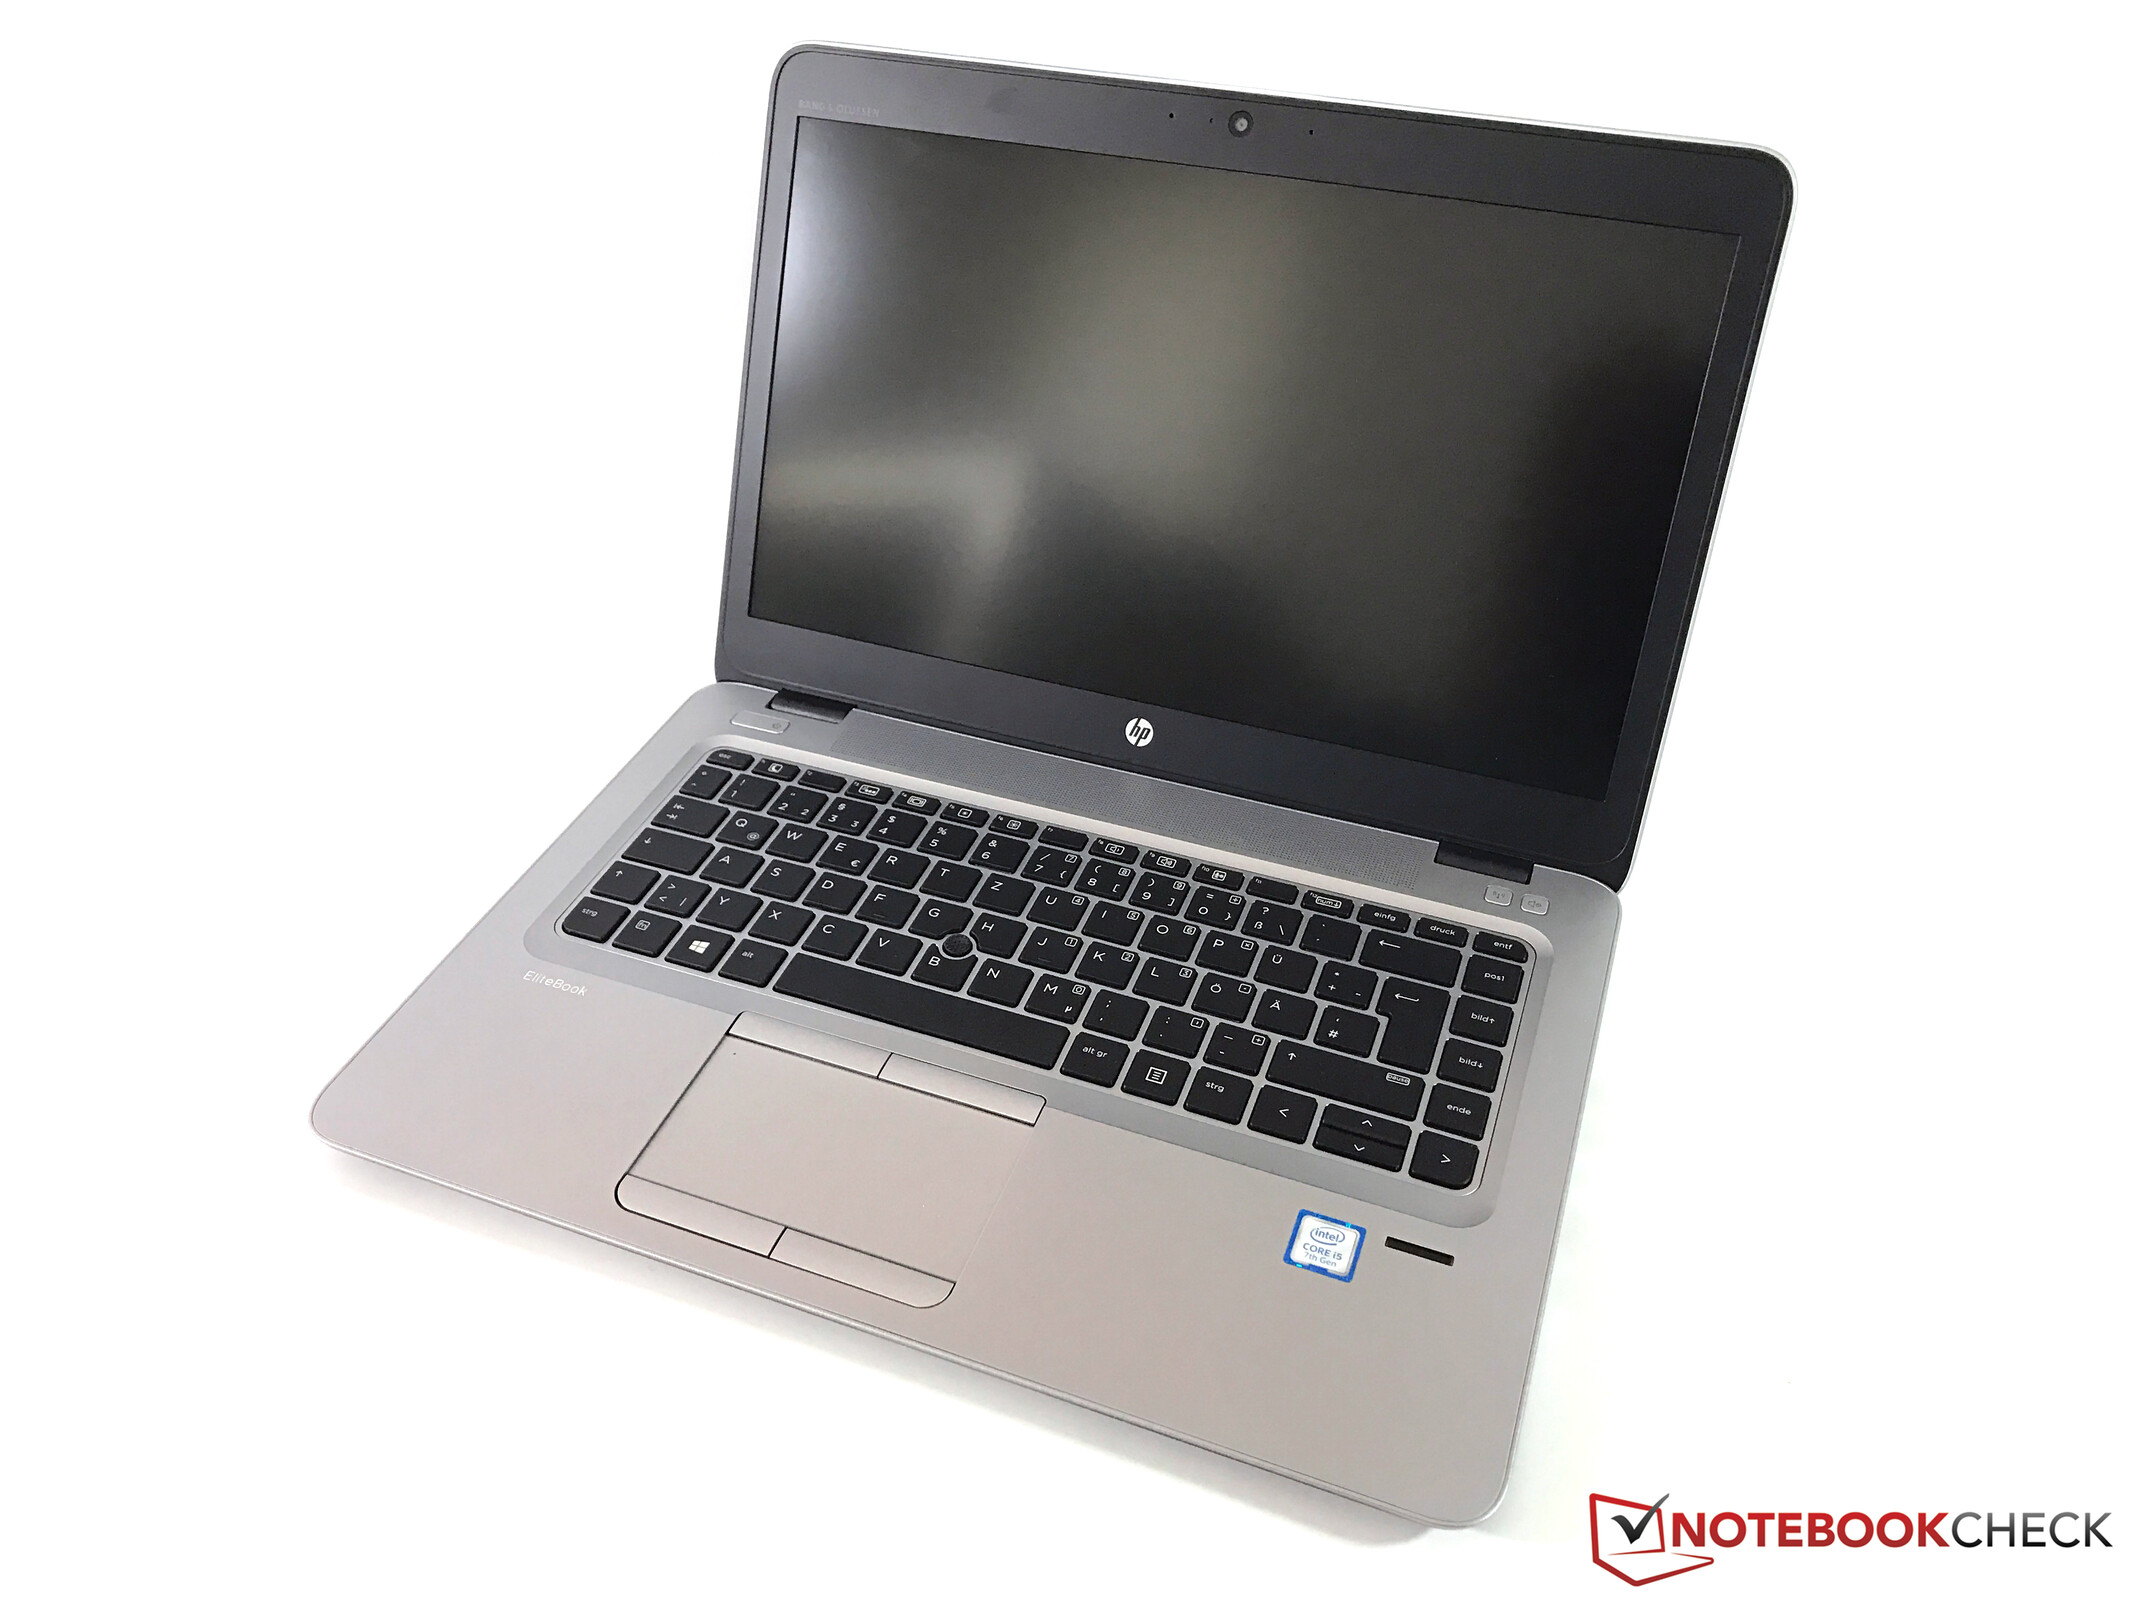 Hp Elitebook 840 G4 7200u Full Hd Laptop Review Notebookcheck Net Reviews